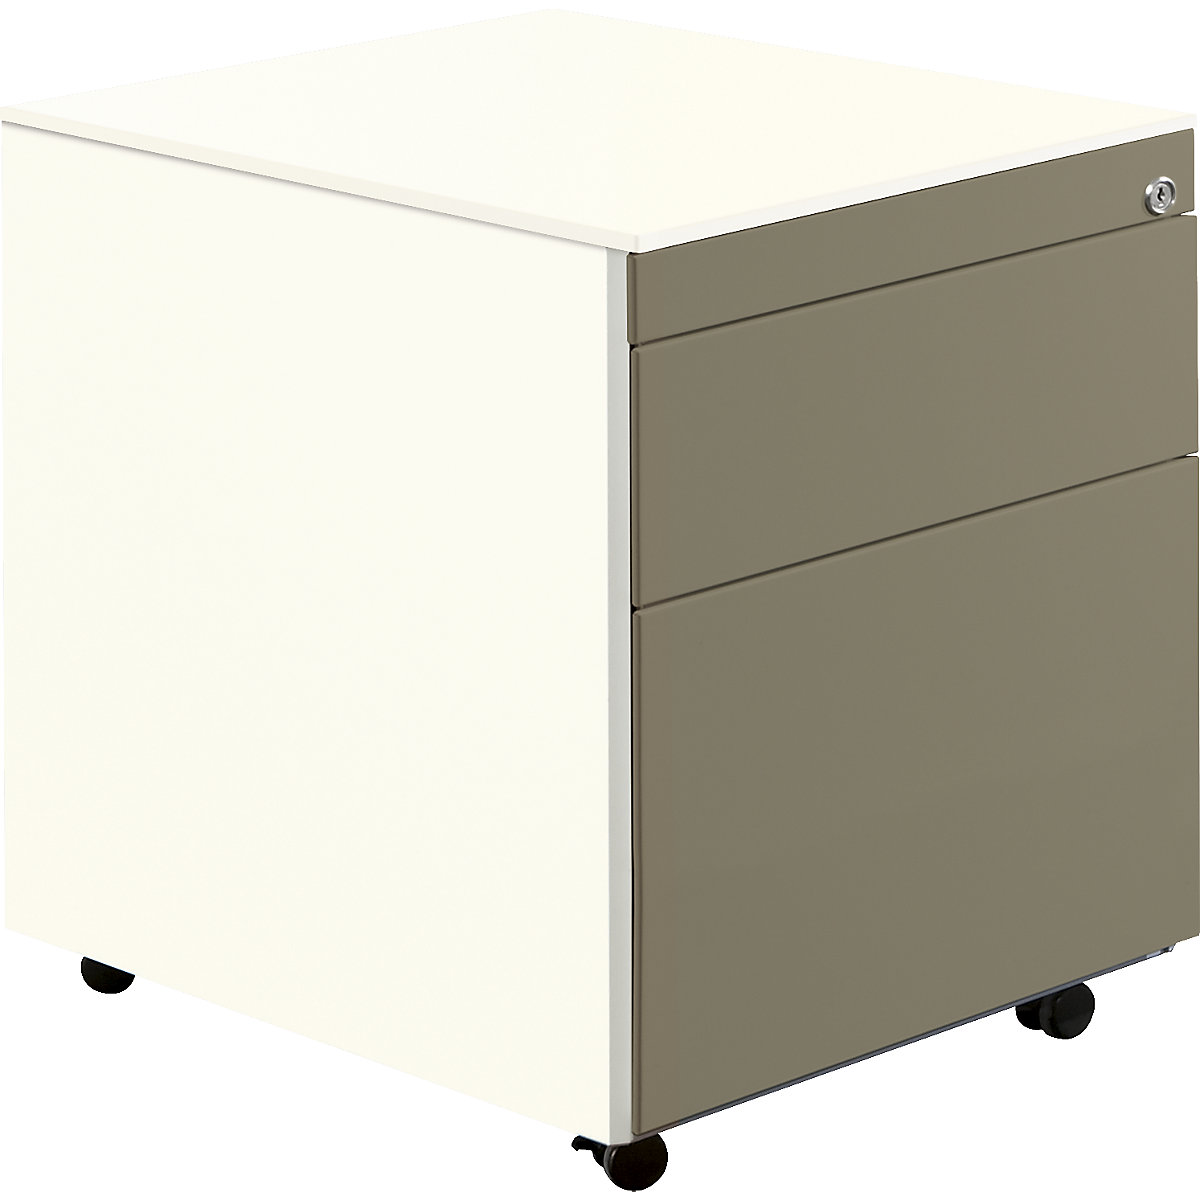 Casetieră cu sertare cu role – mauser, î. x ad. 570 x 600 mm, 1 sertar pentru materiale, 1 registratură suspendată, alb pur / gri-bej / alb pur